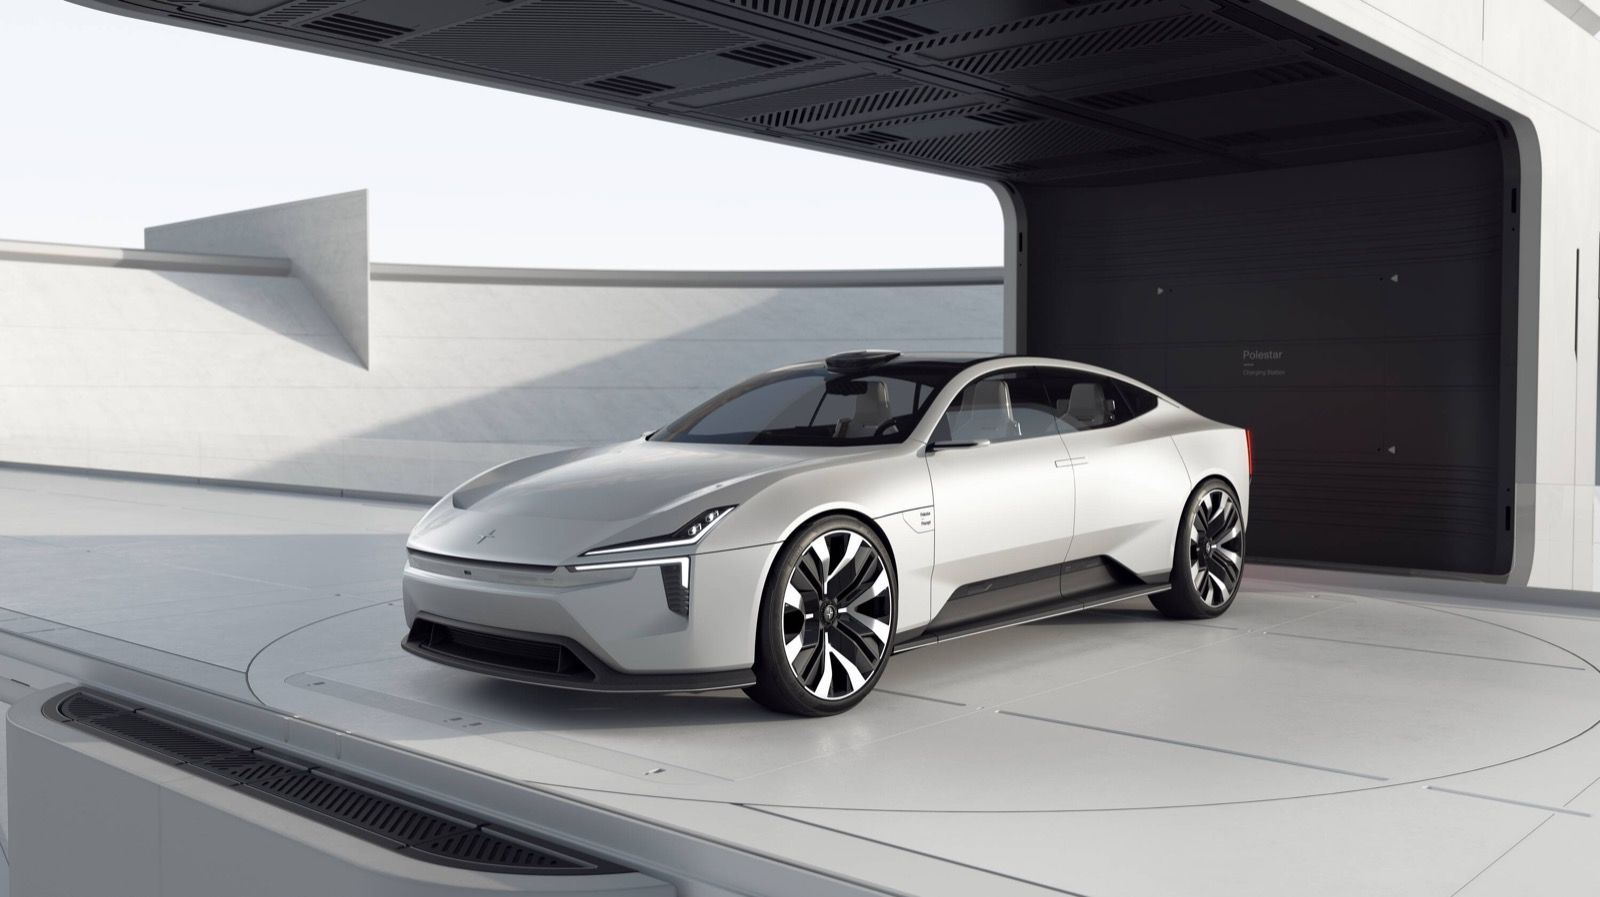 ポールスターの新コンセプトカーは、先進テクノロジーとリサイクル素材で新たな高級車像を提示